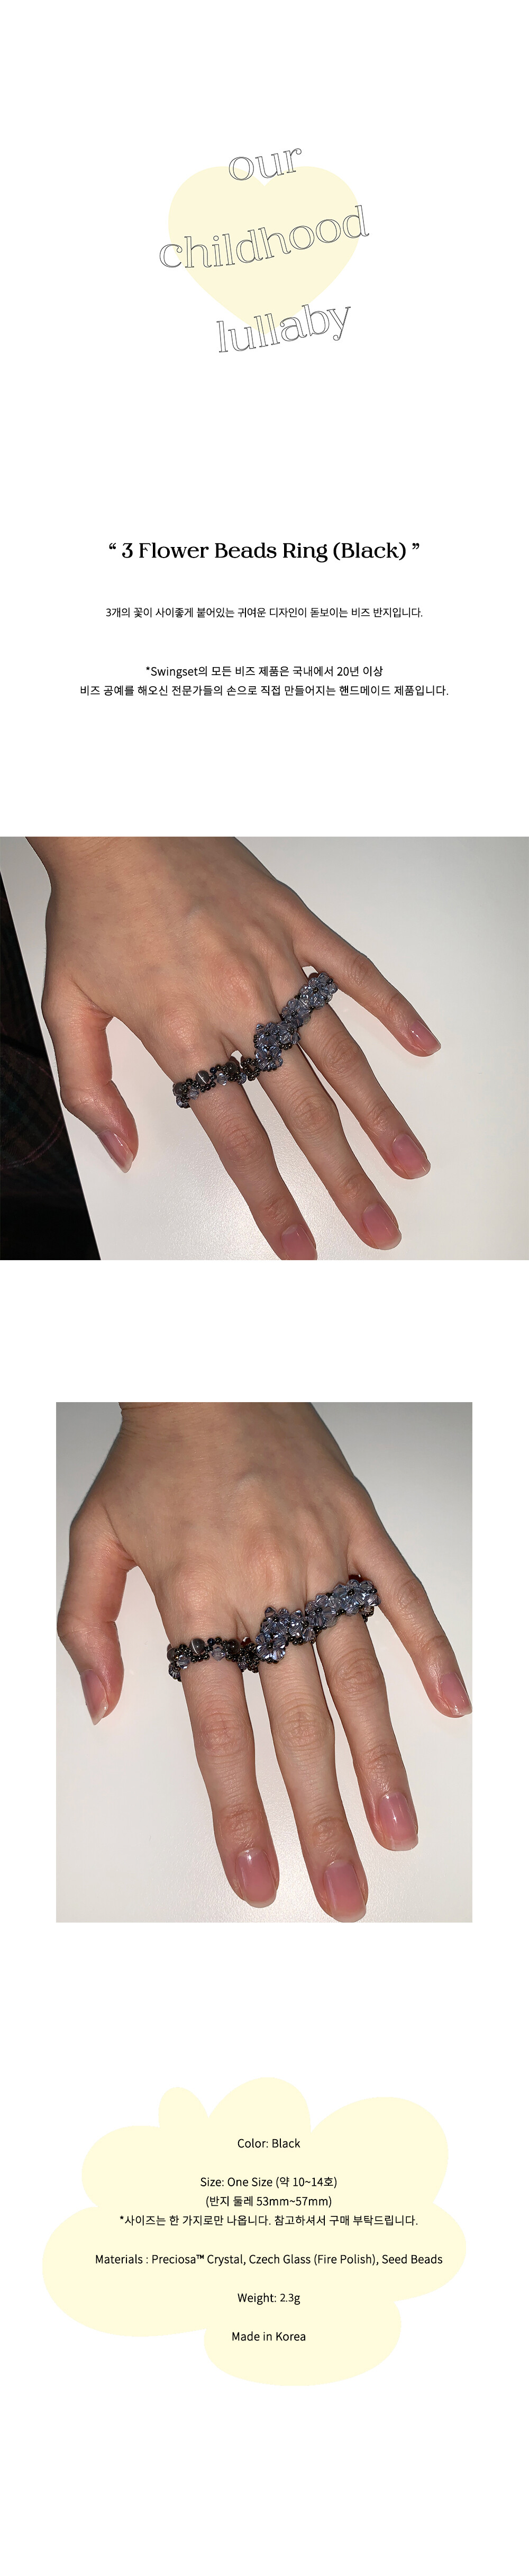 3 Flower Beads Ring (Black)